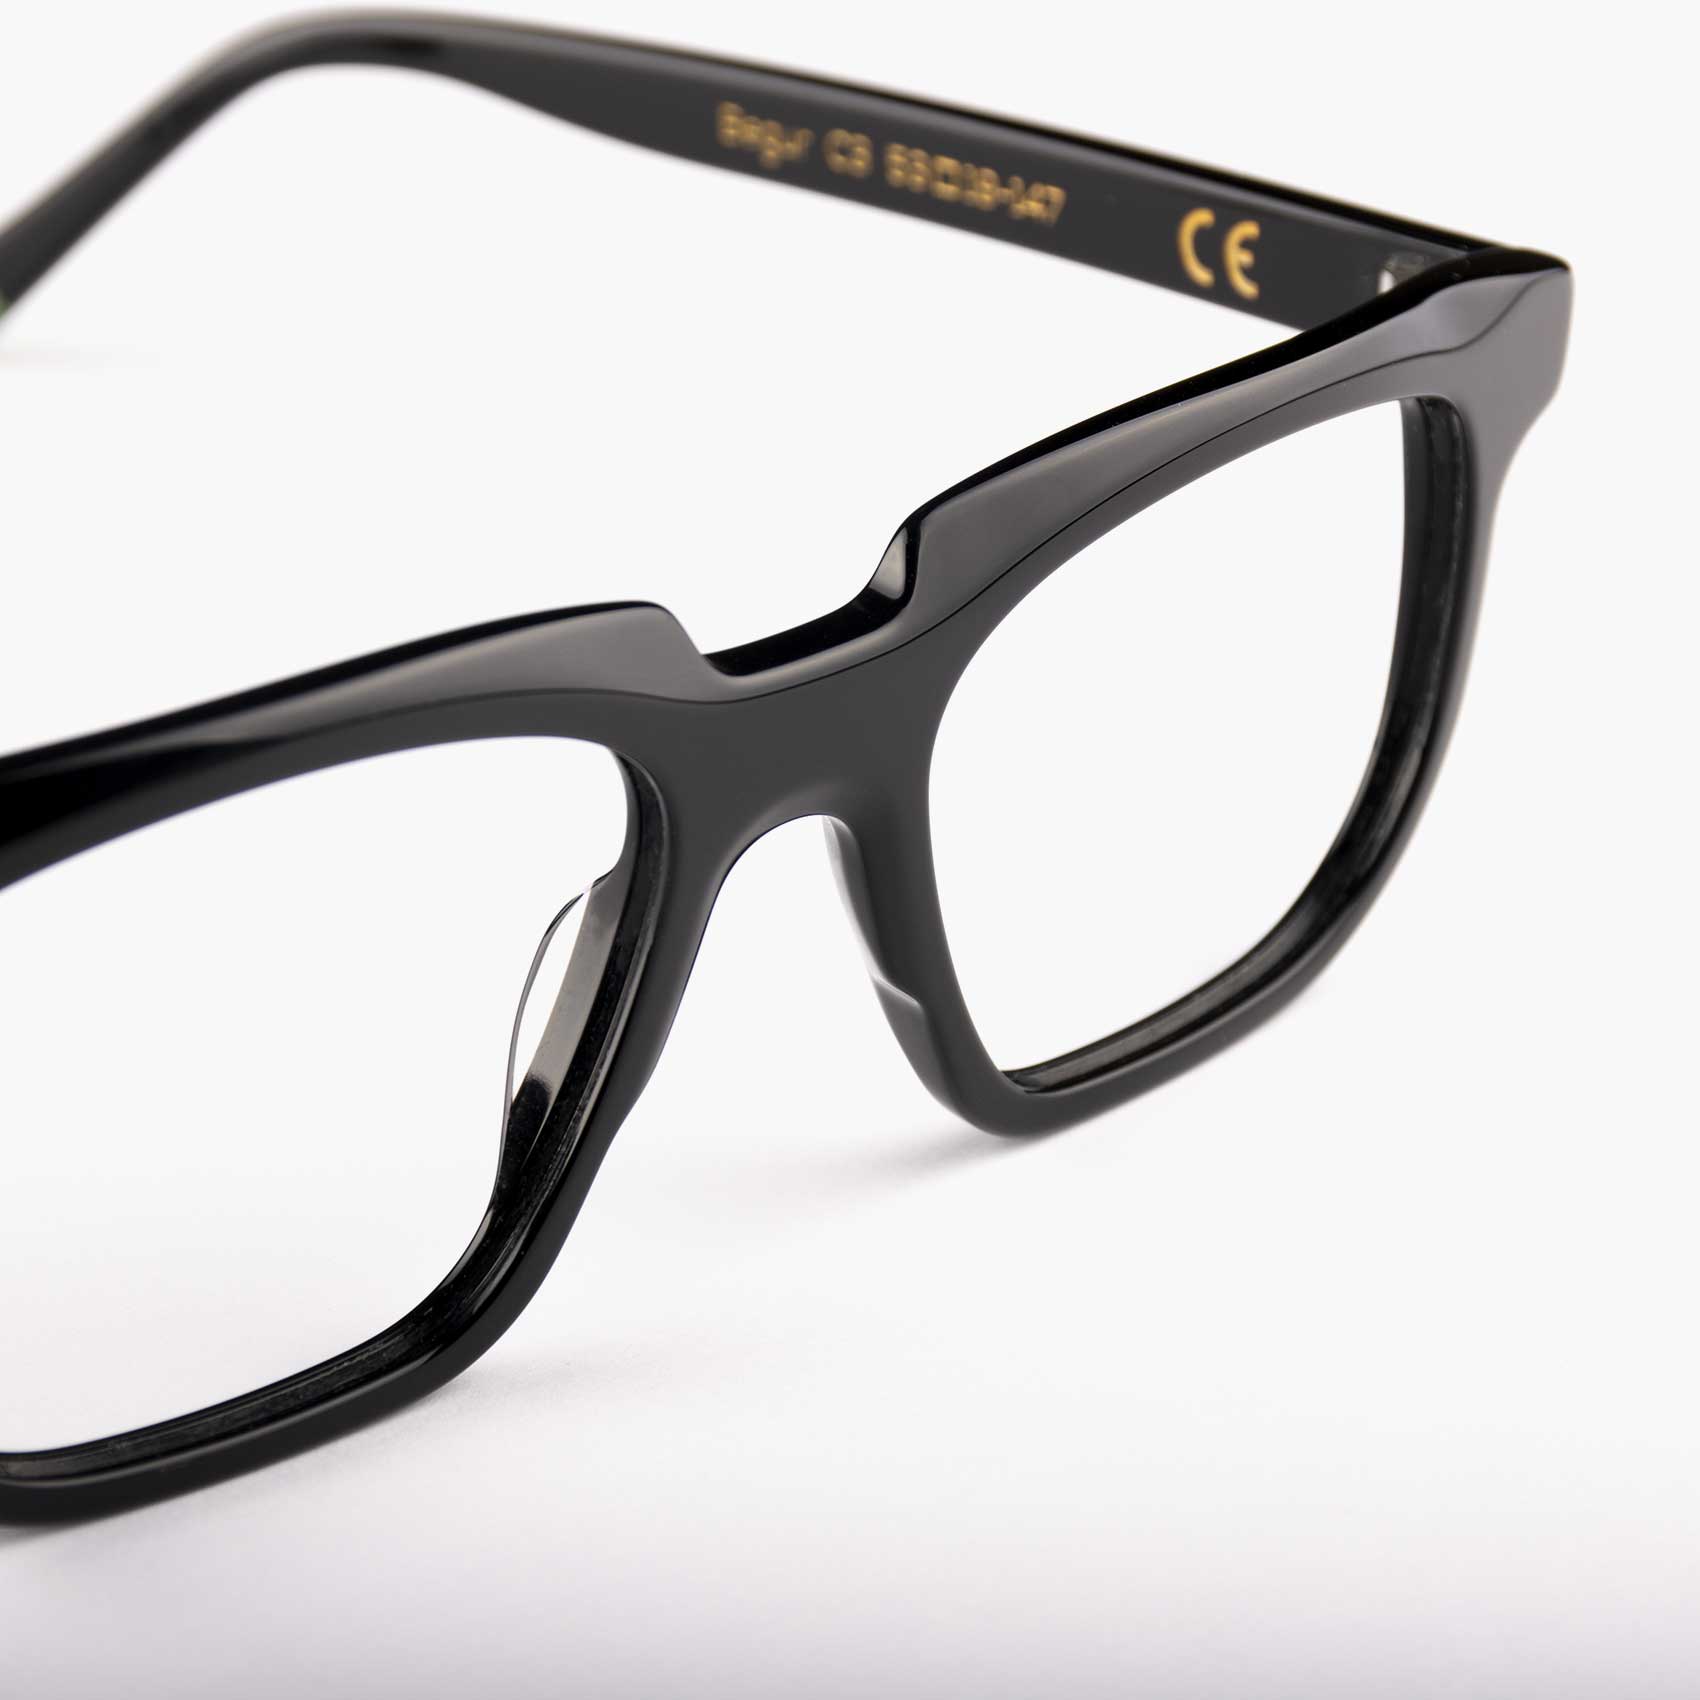 Proud Eyewear Begur personal style black glasses detail